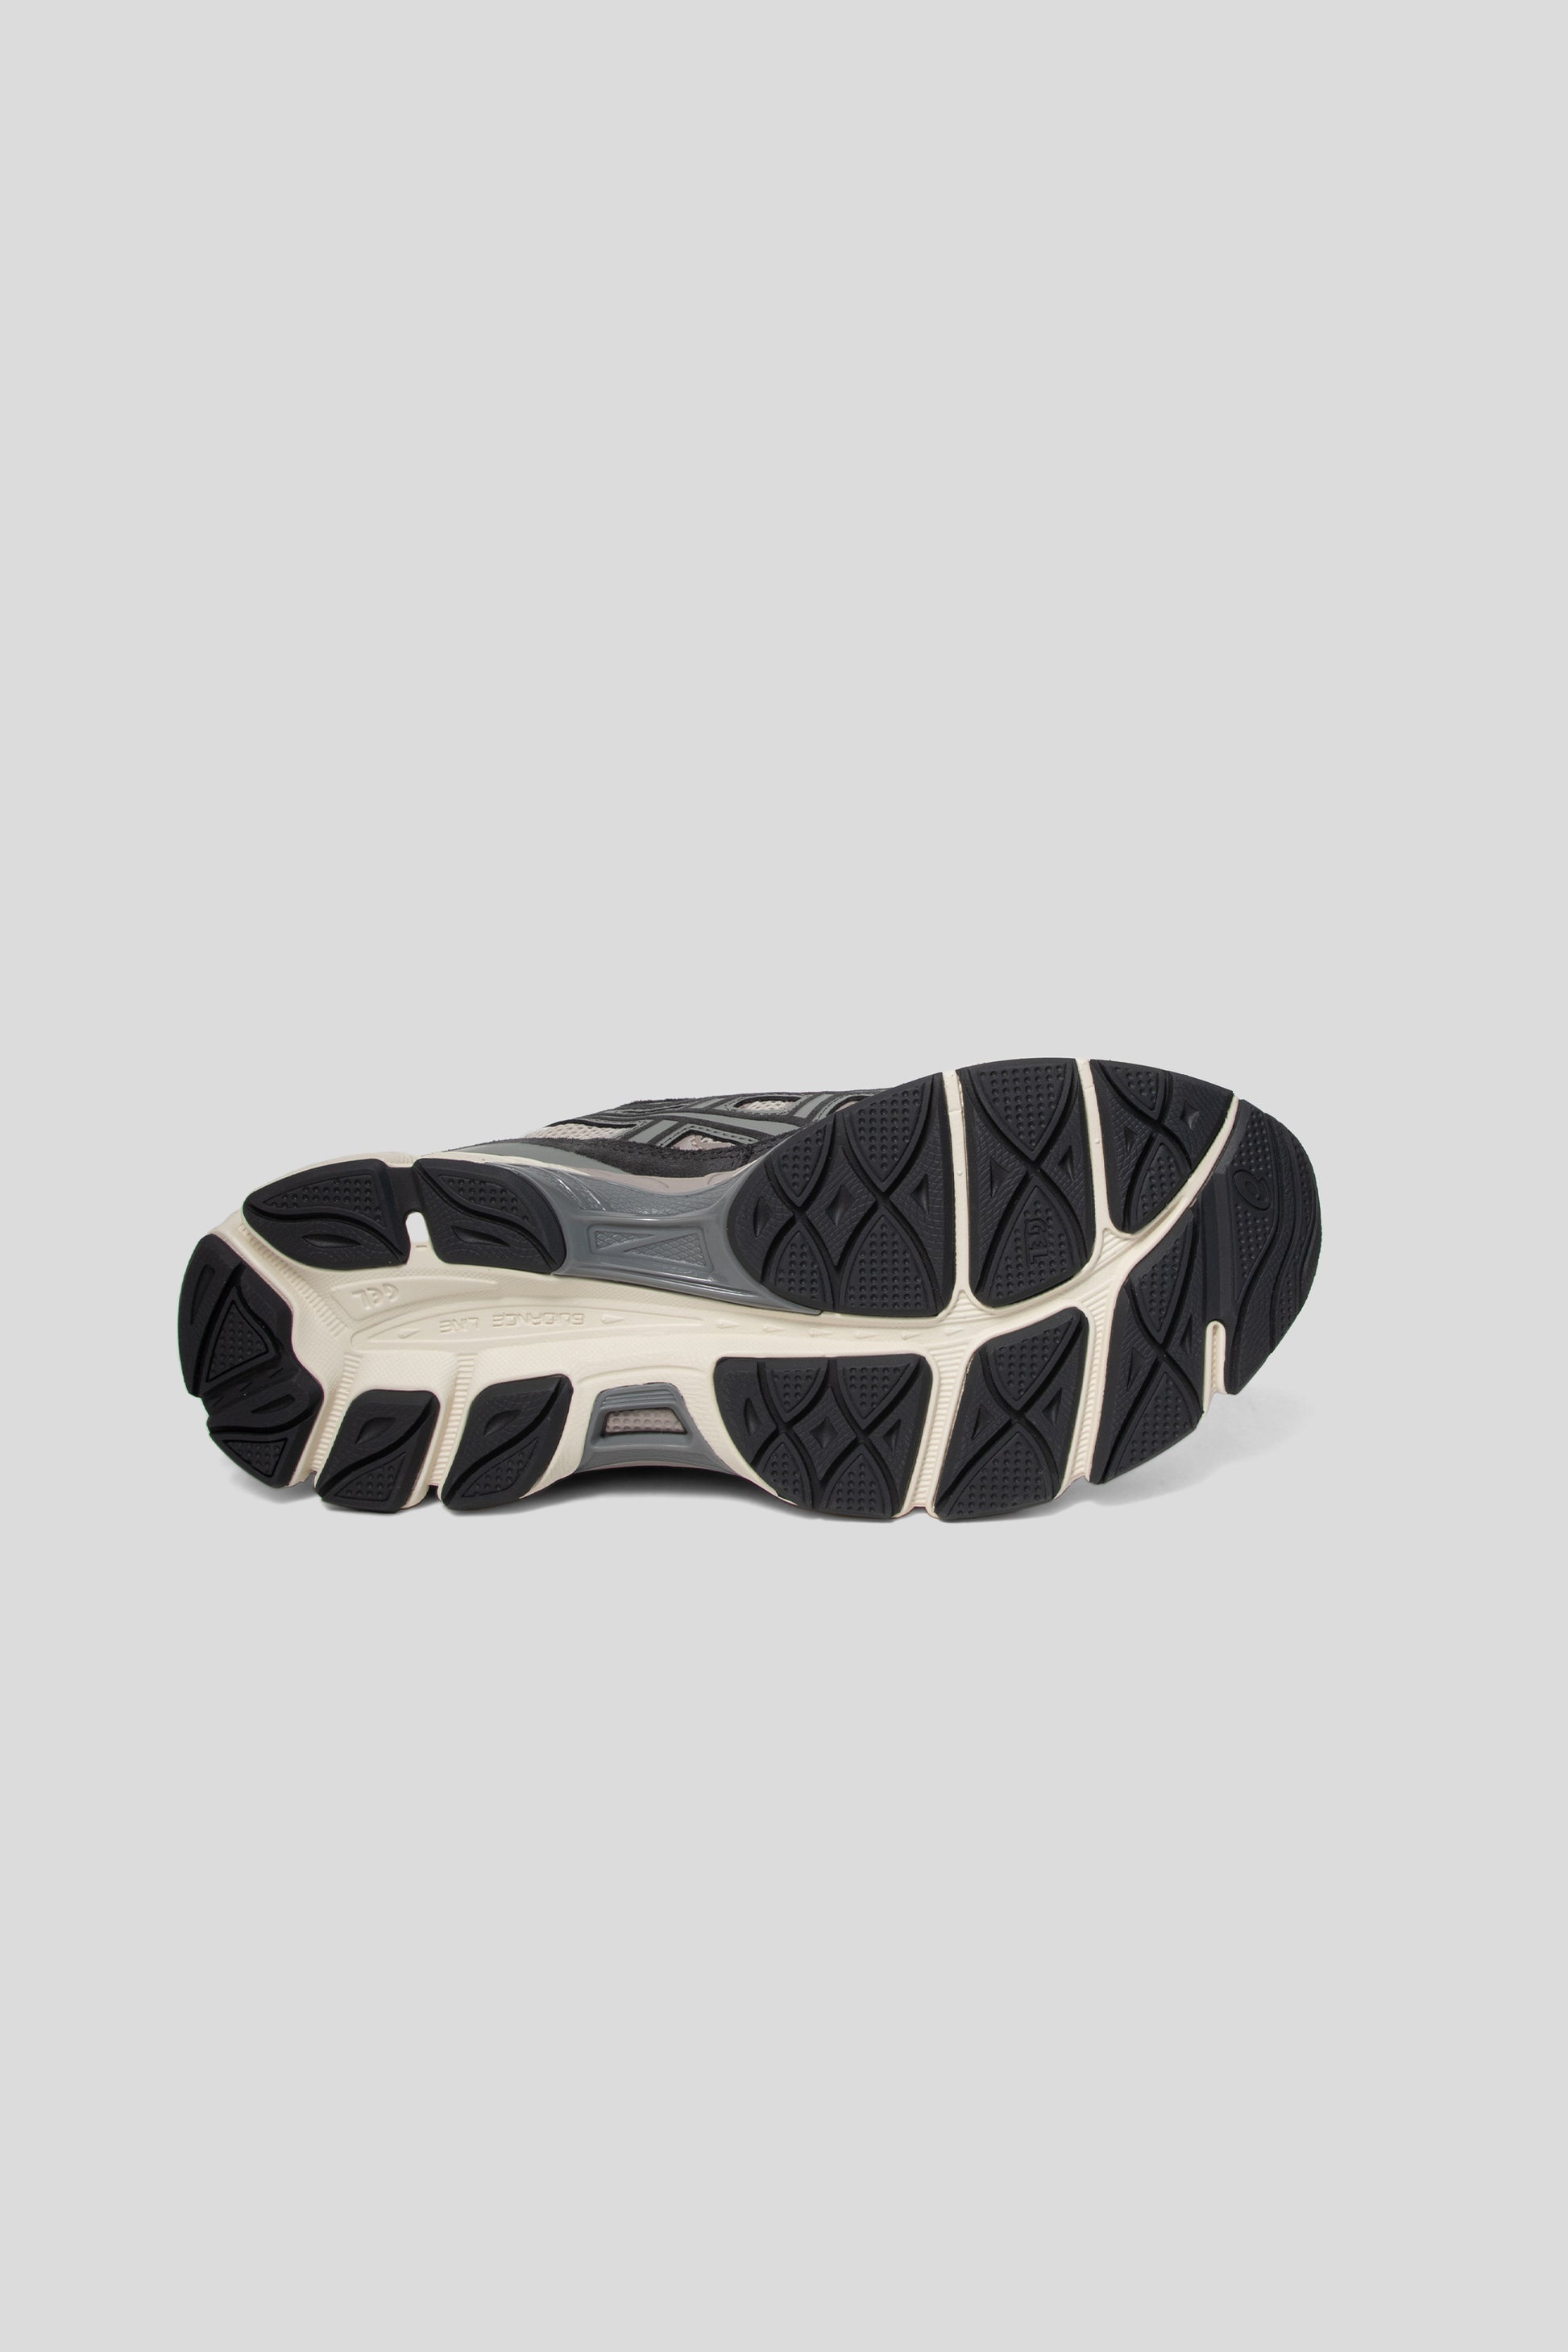 Asics Gel-NYC Shoe in Oatmeal/Obsidian Grey